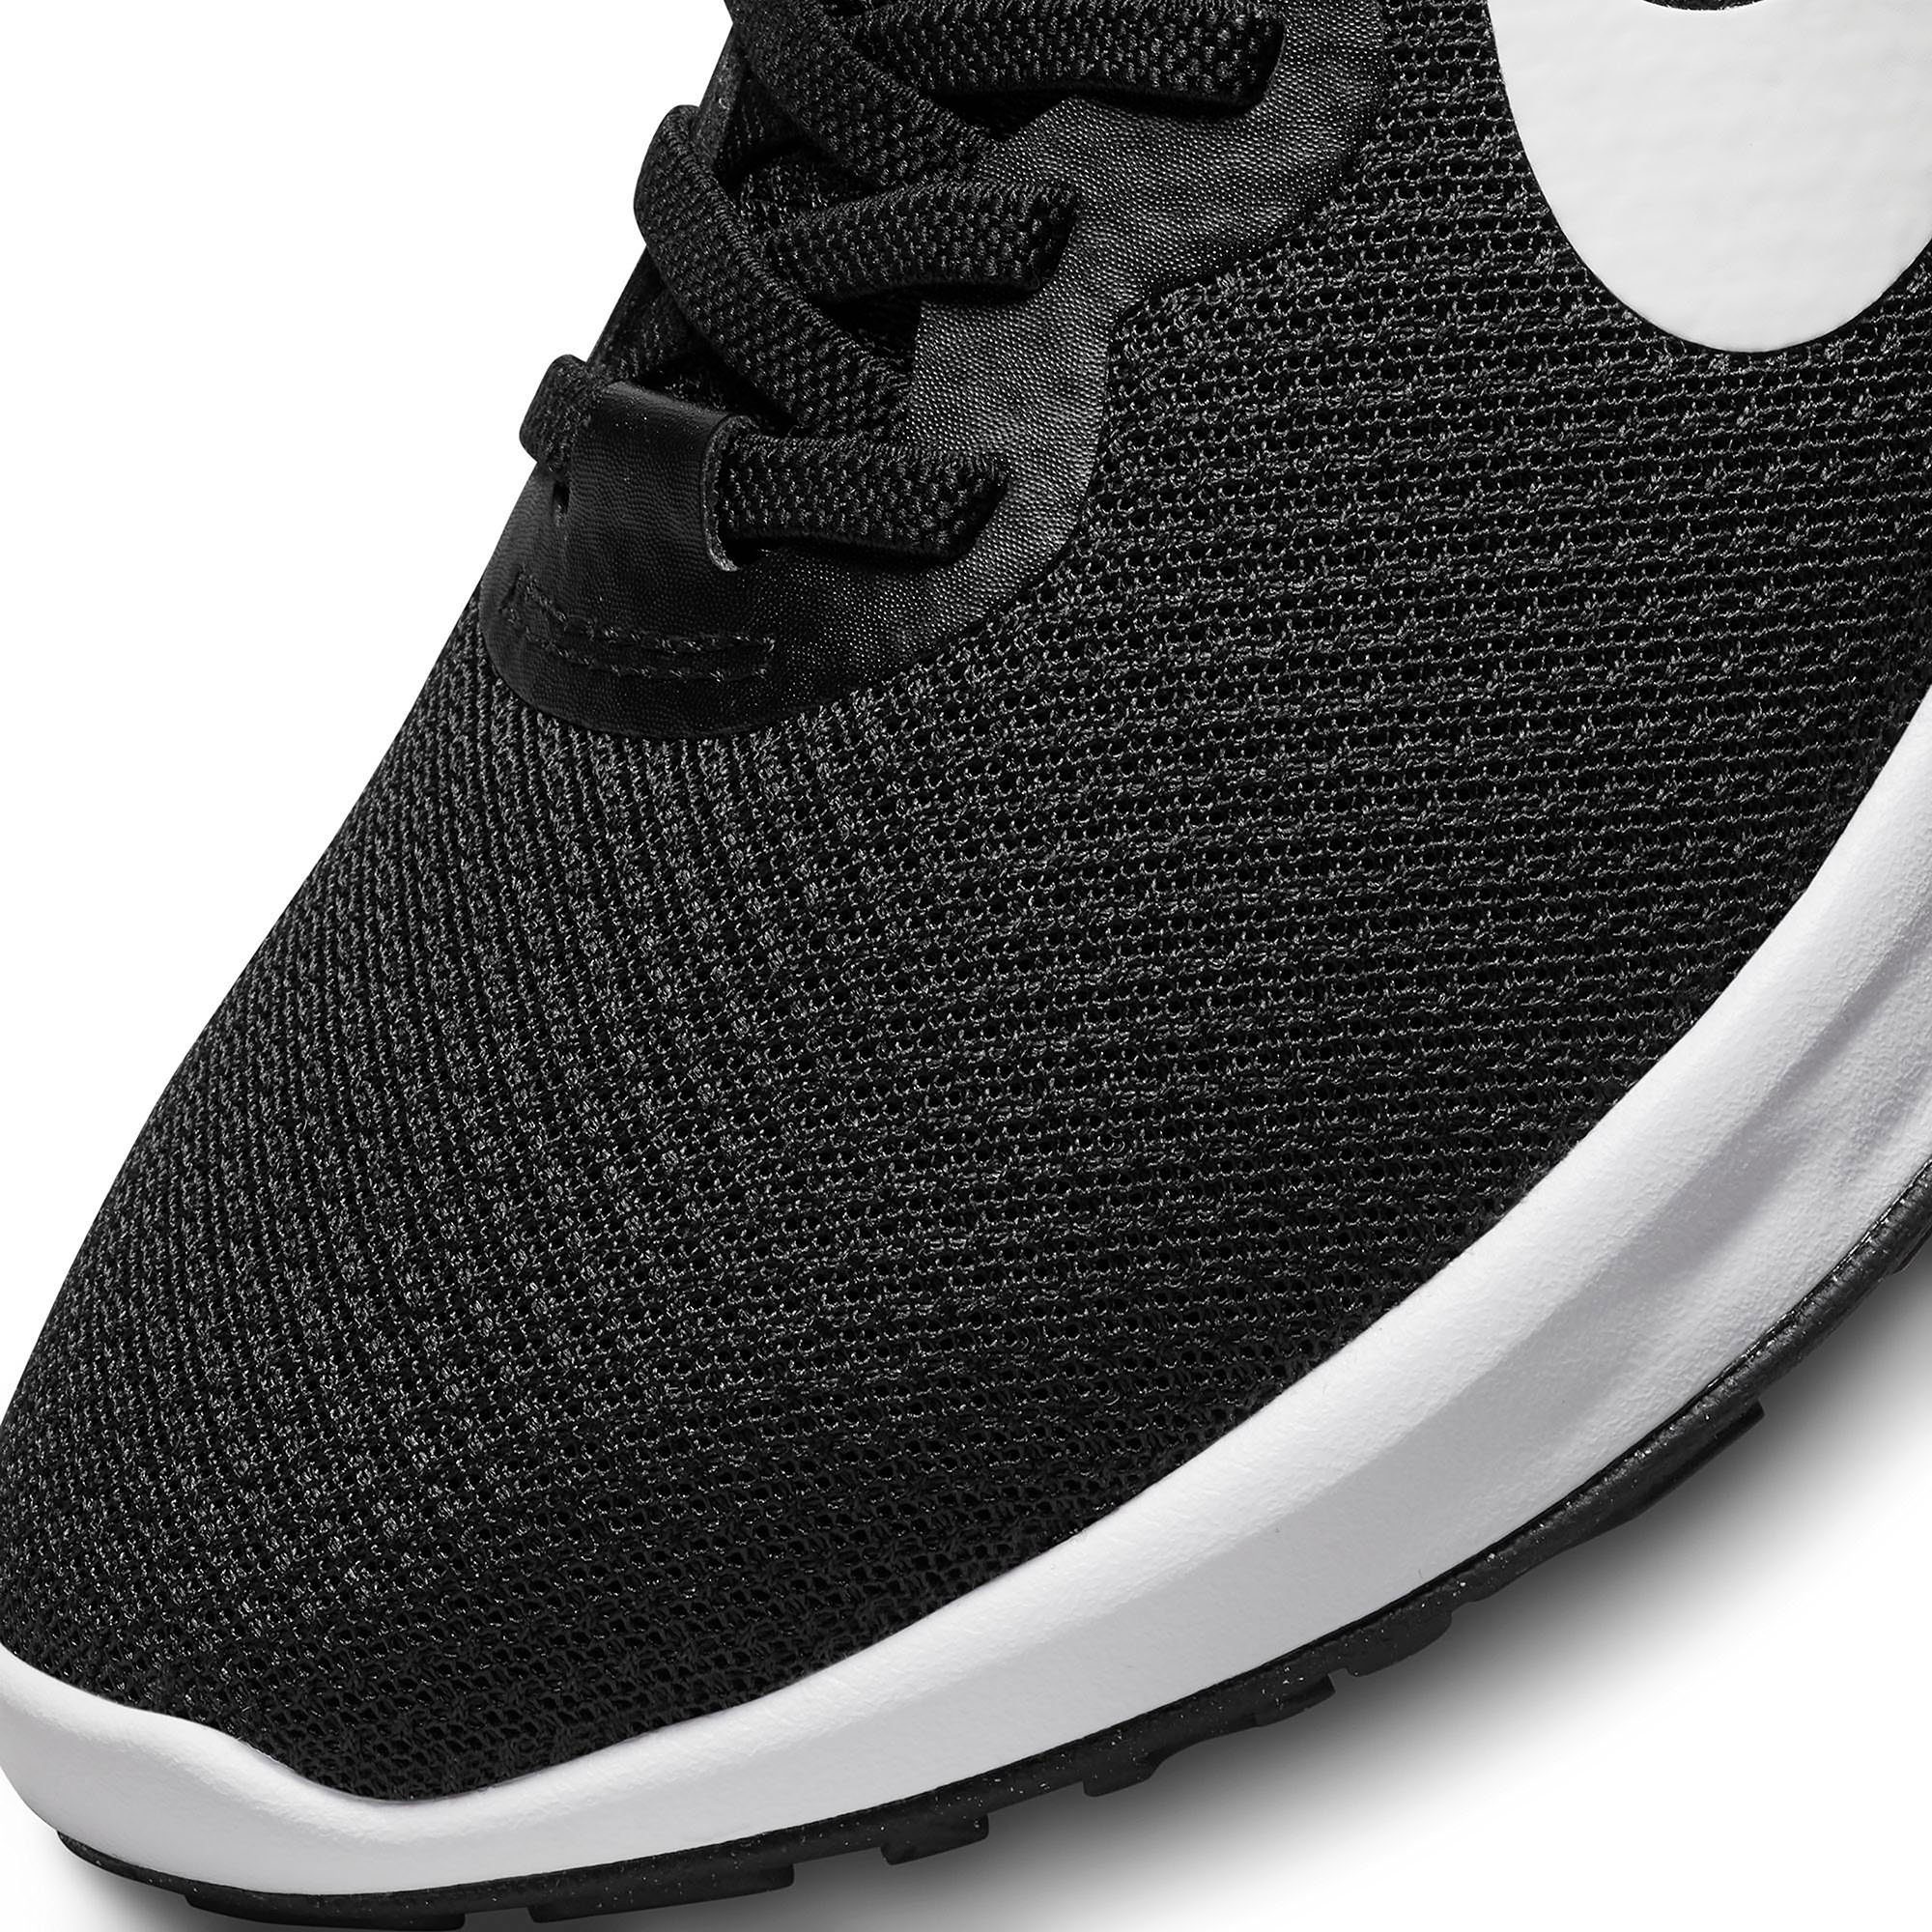 6 FLYEASE REVOLUTION Nike NEXT Laufschuh E BLACK-WHITE NATURE